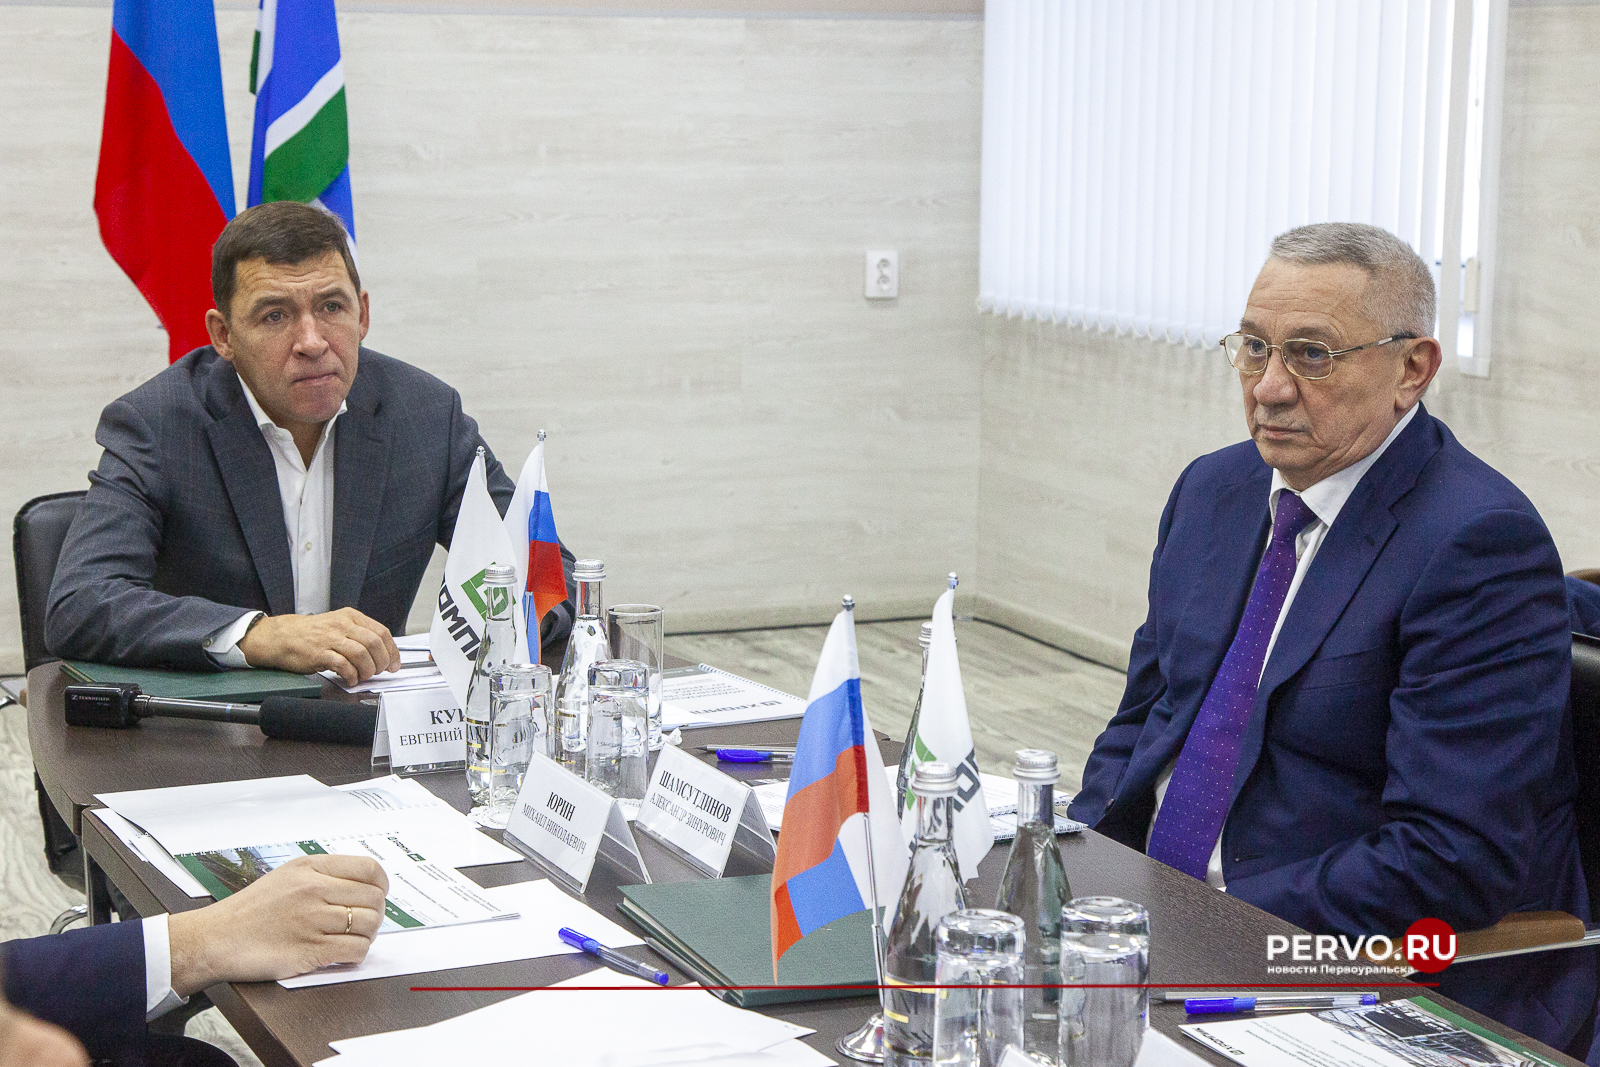 Евгений Куйвашев обсудил с промышленниками участие предприятий в реализации социально значимых проектов в Первоуральске